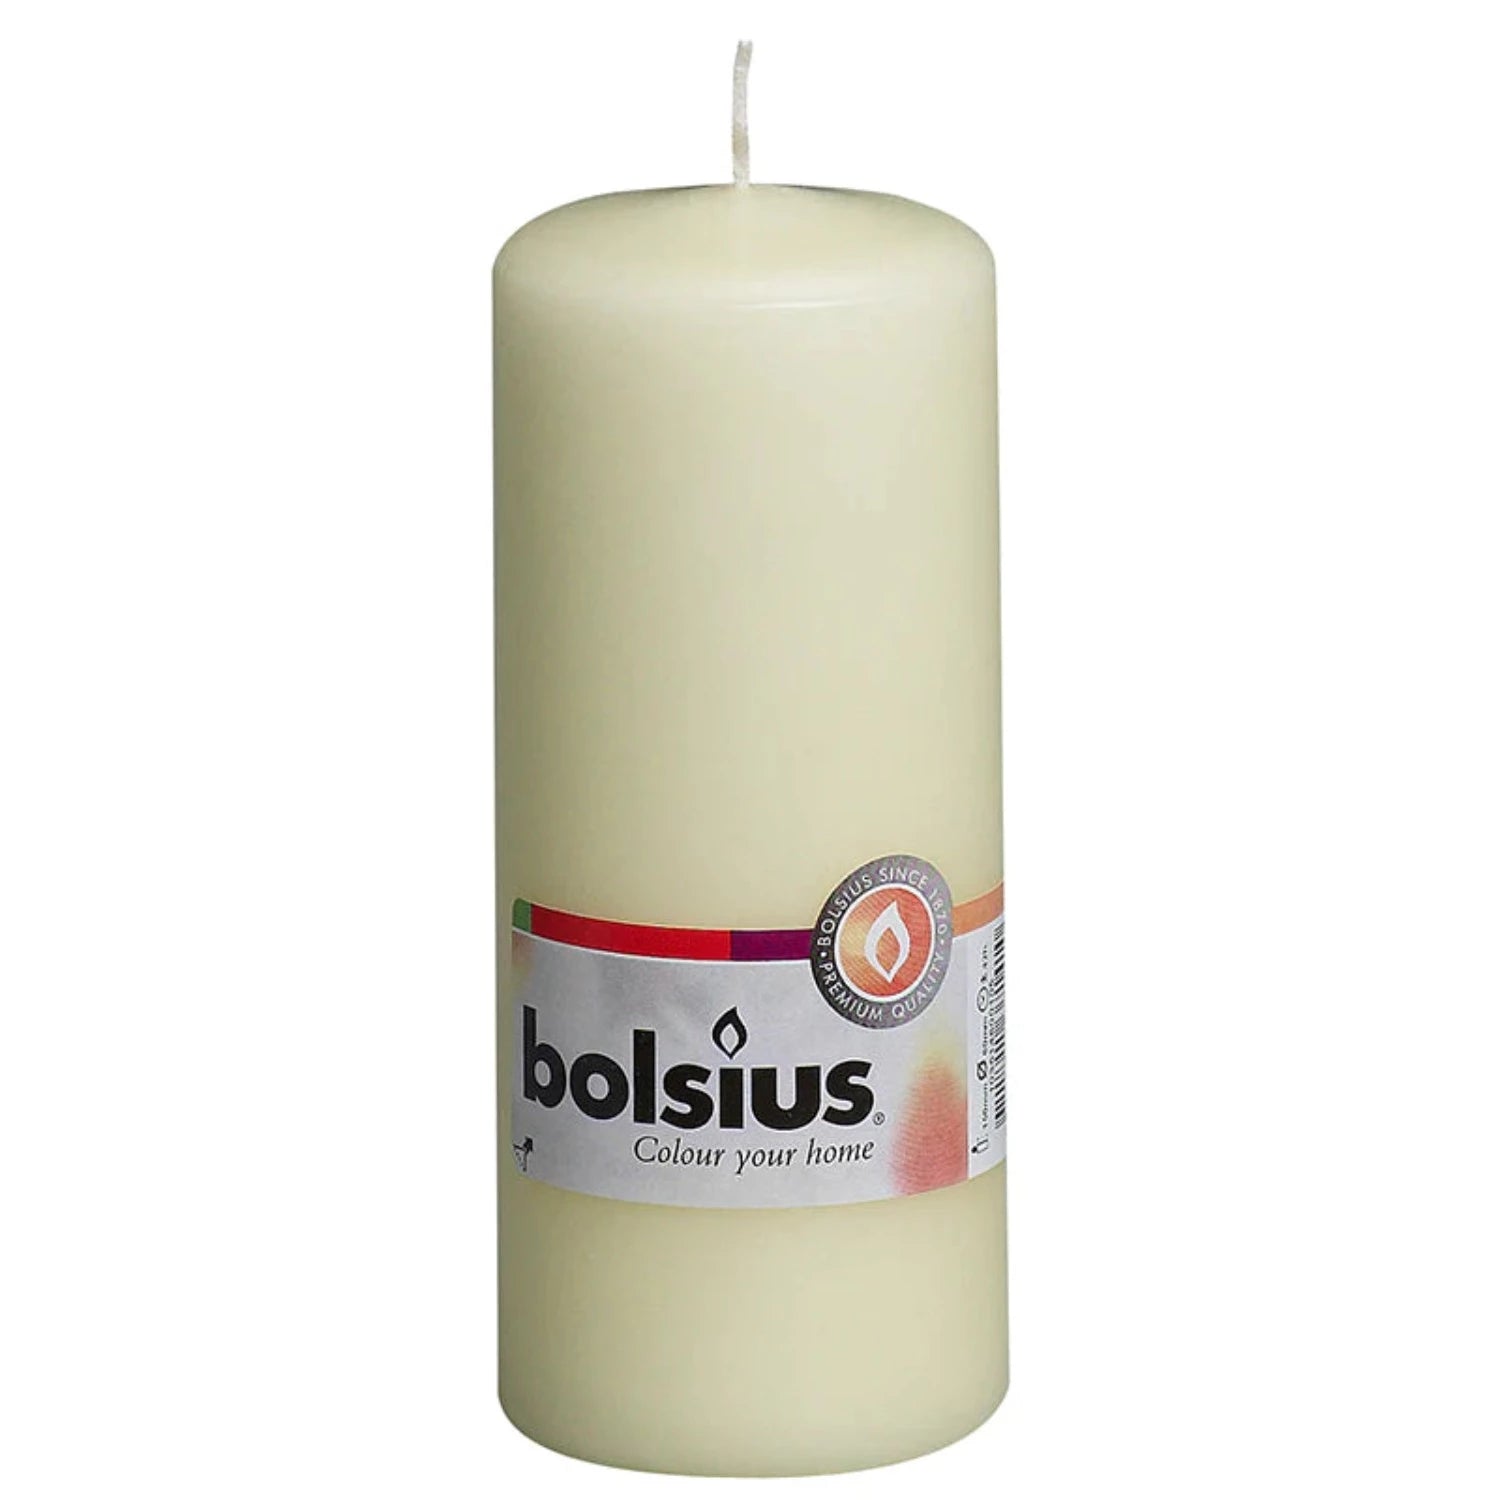 bolisus-pillar-candle-ivory-150x60